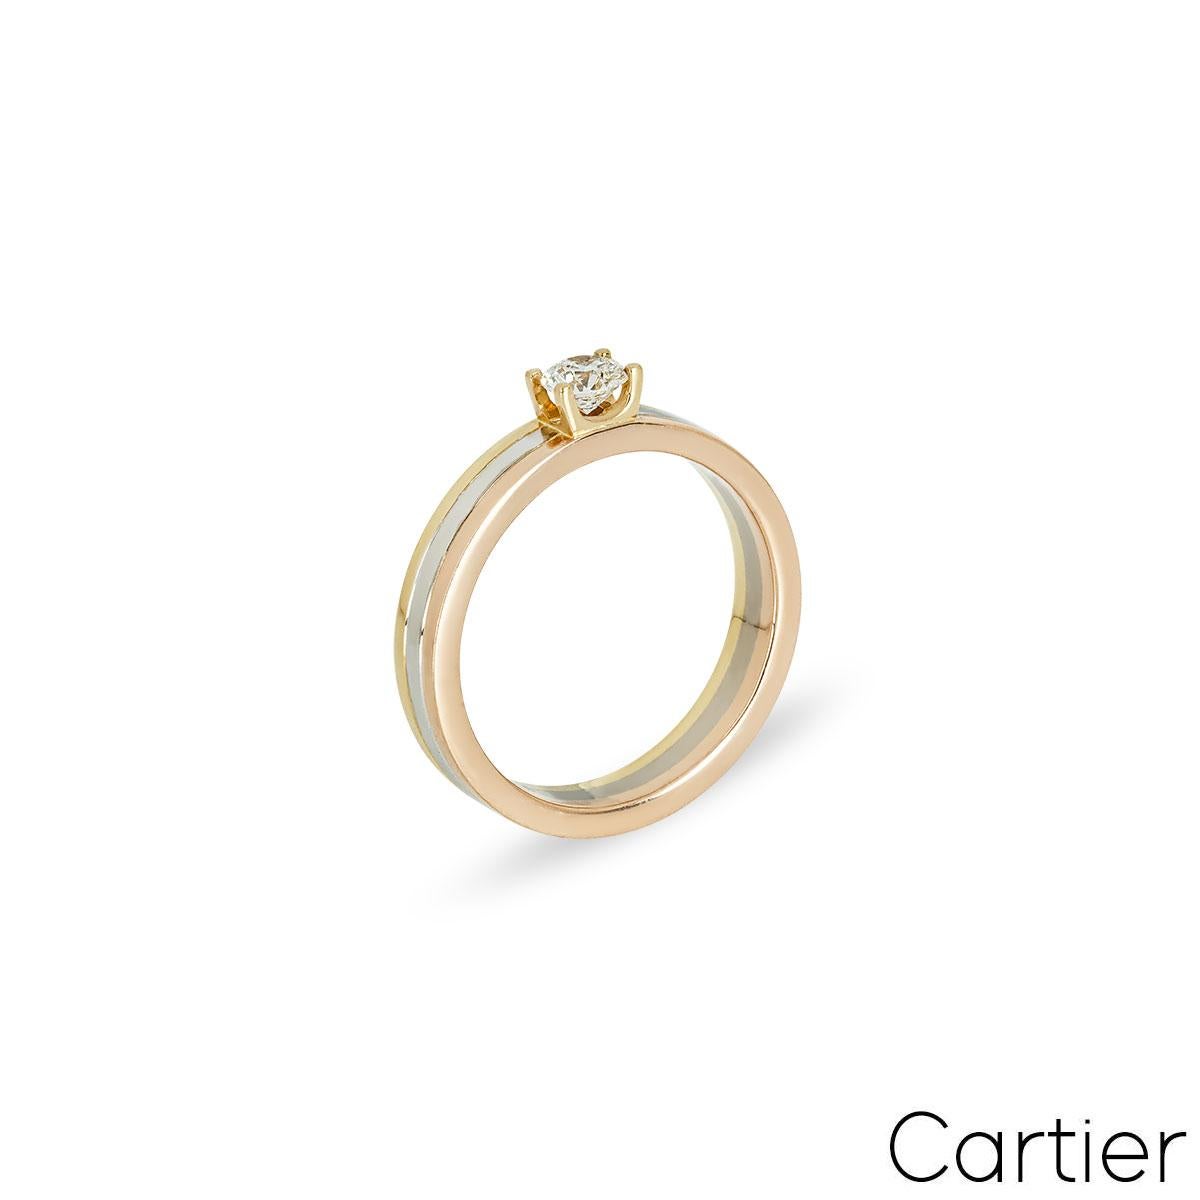 Ein wunderschöner 18-karätiger Diamantring aus dreifarbigem Gold von Cartier aus der Kollektion Trinity de Cartier. Der Ring ist in der Mitte mit einem runden Diamanten im Brillantschliff von 0,24 Karat besetzt. Der Diamant ist in einer klassischen